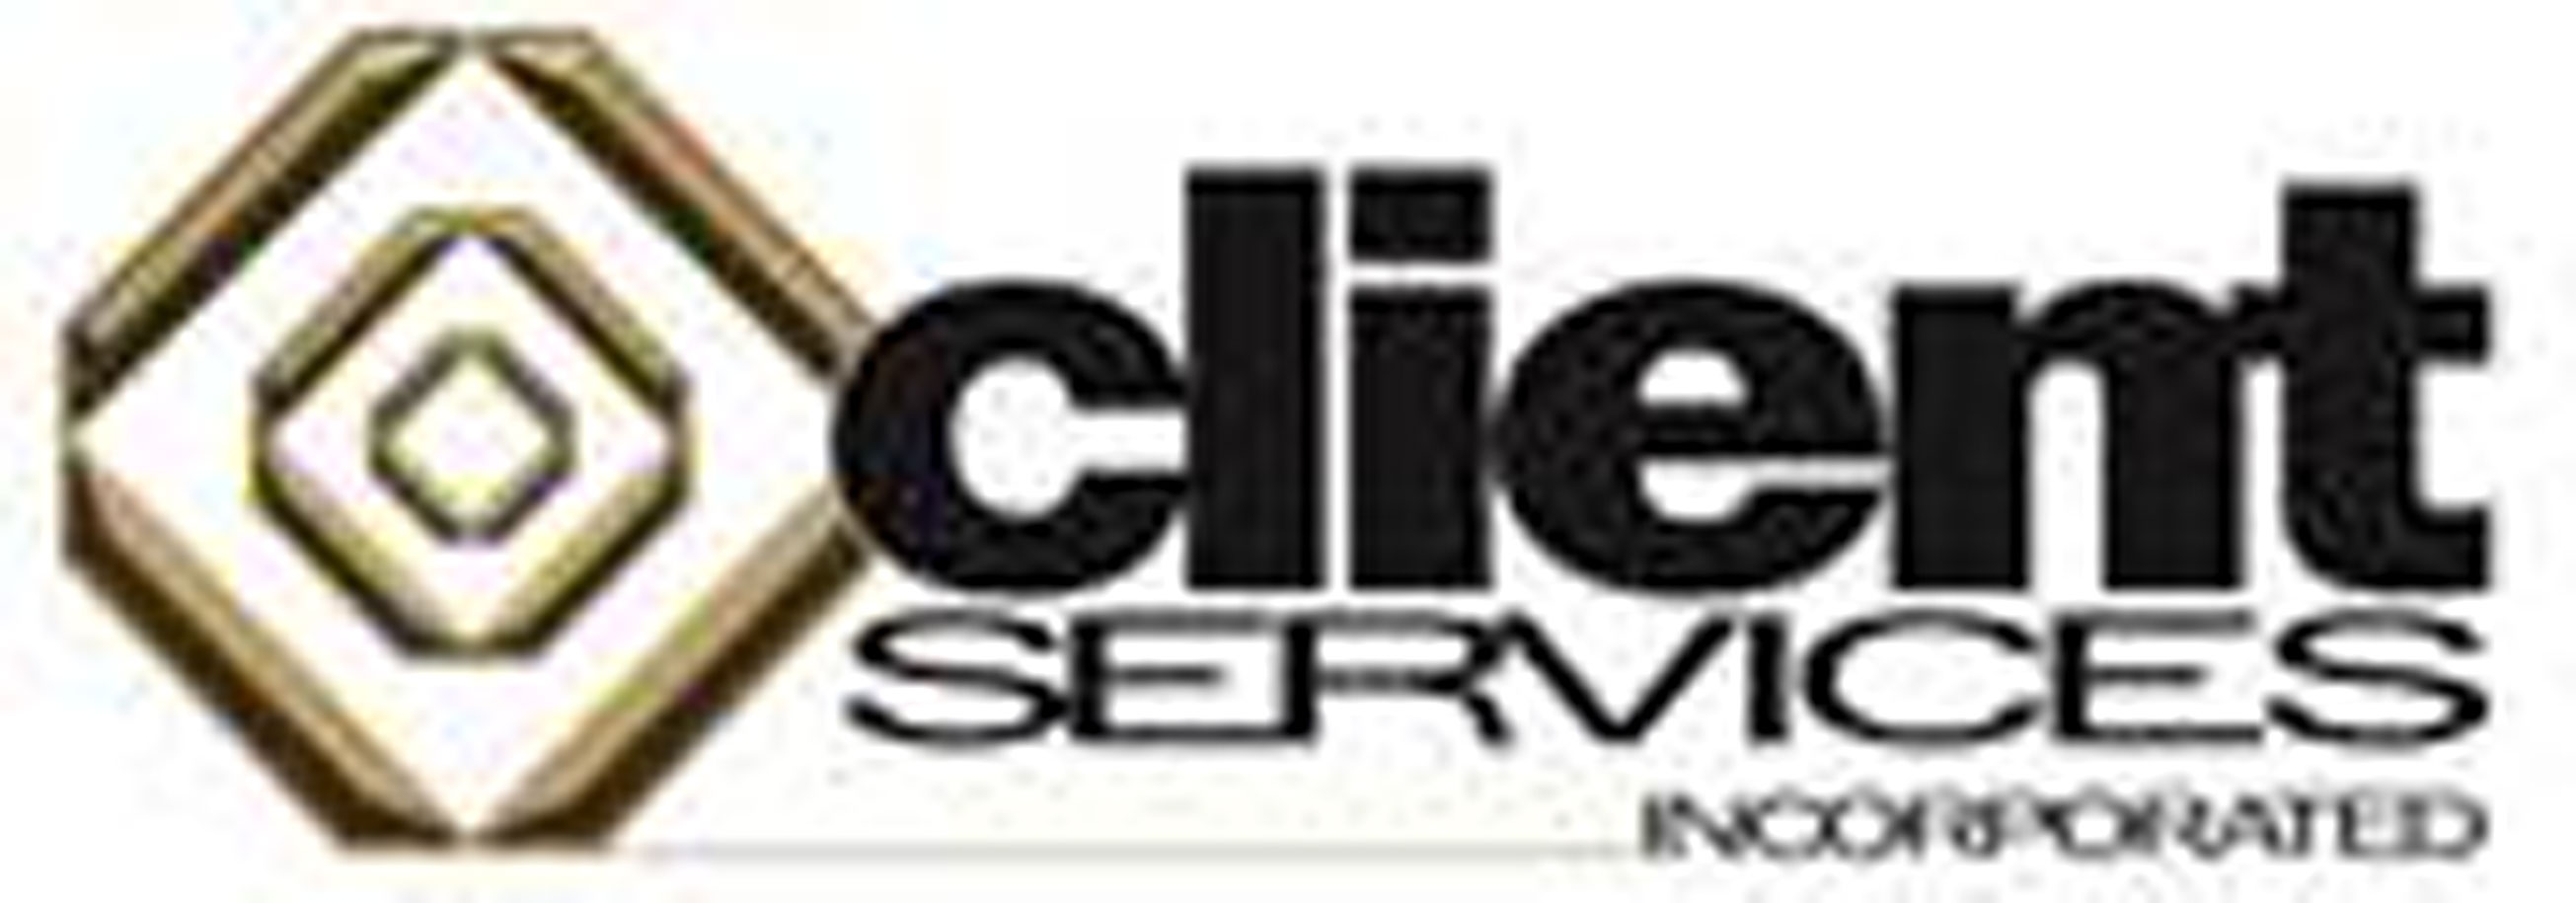 Client Services Logo